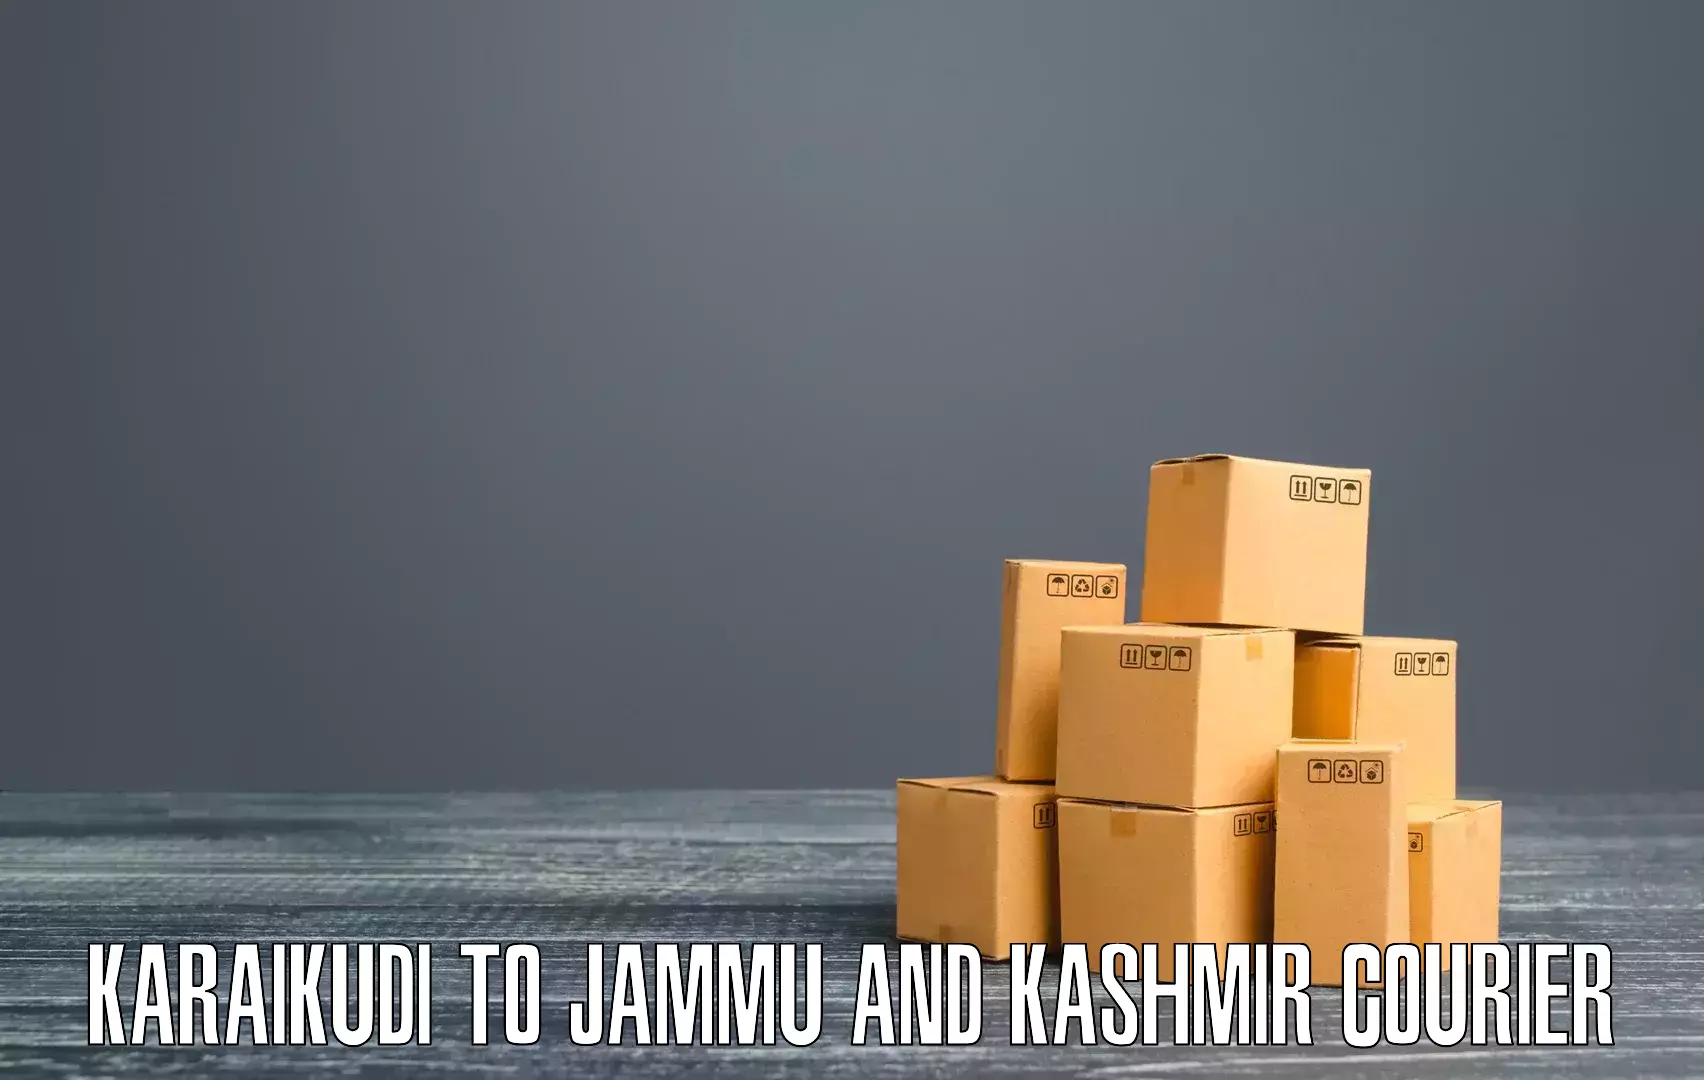 Quick booking process in Karaikudi to IIT Jammu